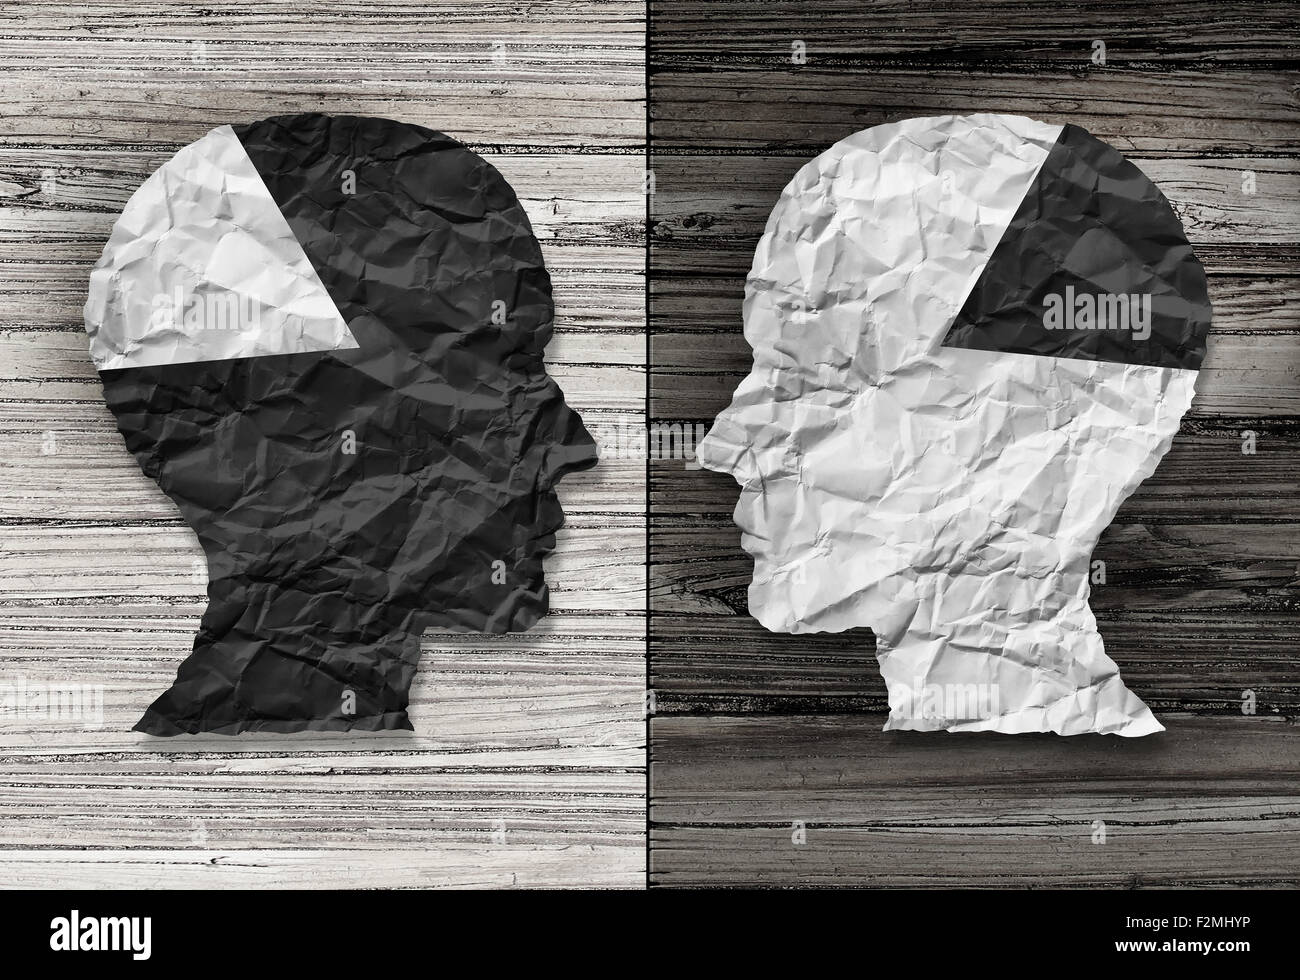 Concepto de igualdad étnica y la justicia racial símbolo como un papel arrugado en blanco y negro con la forma de una cabeza humana en madera rústica antigua Foto de stock